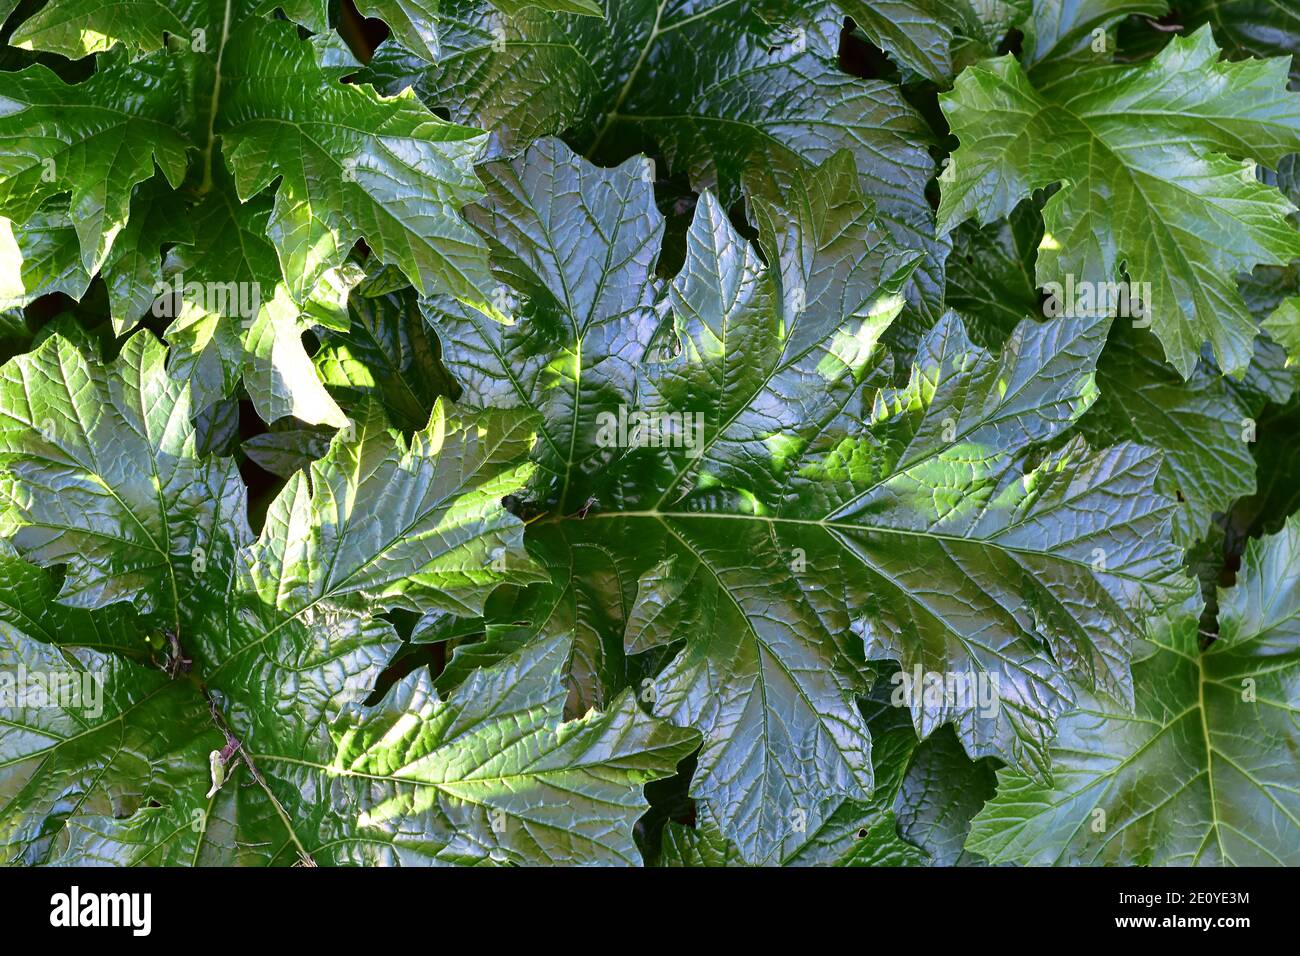 Modello di grandi foglie di colore verde scuro con superficie riflettente liscia e vene chiaramente visibili. Foto Stock